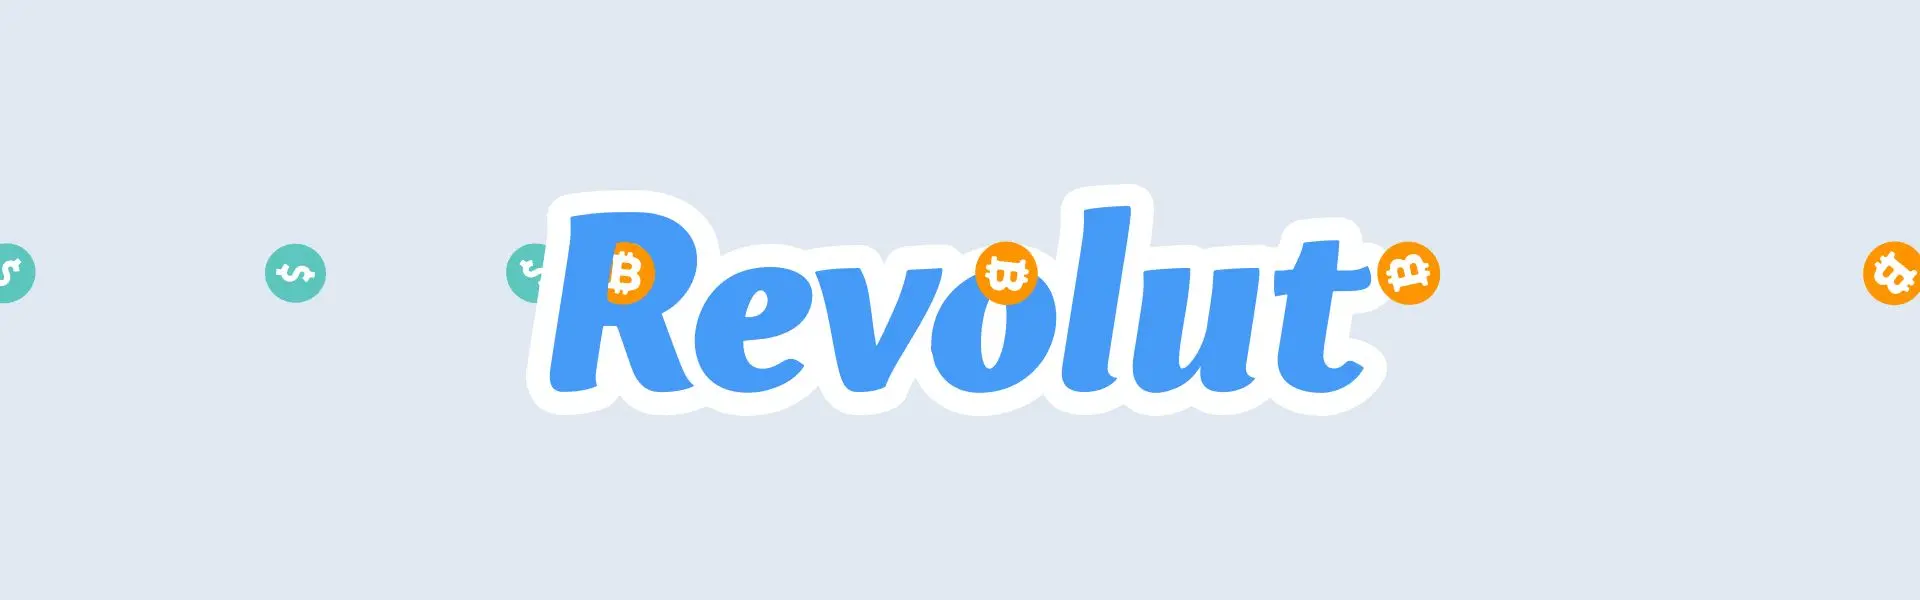 Revolut розпочав роботу з біткоїн-біржею.